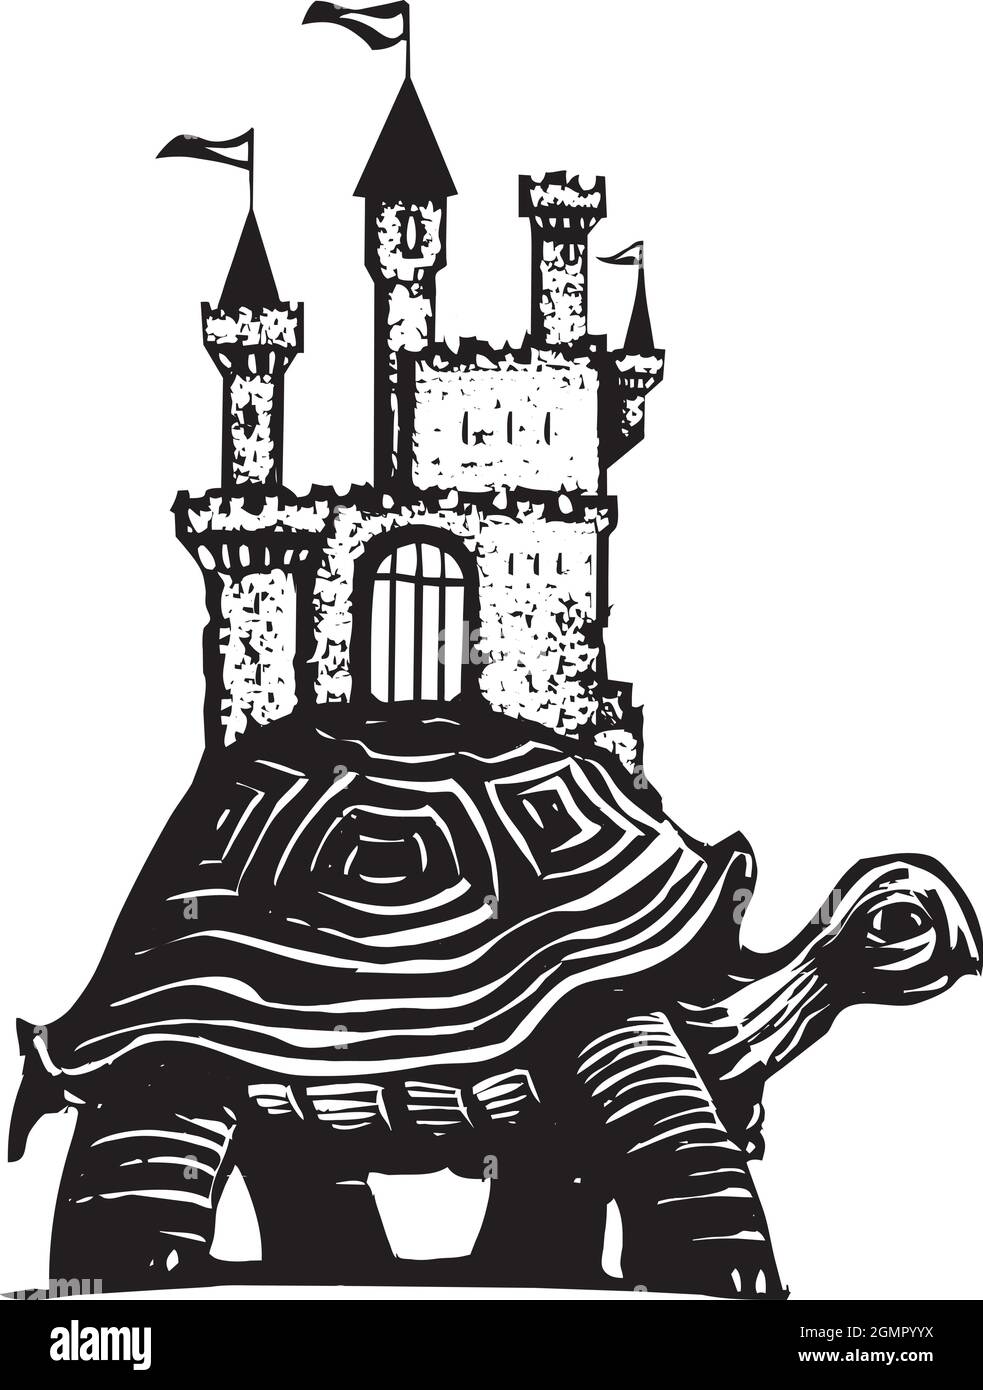 Ilustración de estilo expresionista tallados en madera de un castillo en la espalda de las tortugas. Ilustración del Vector